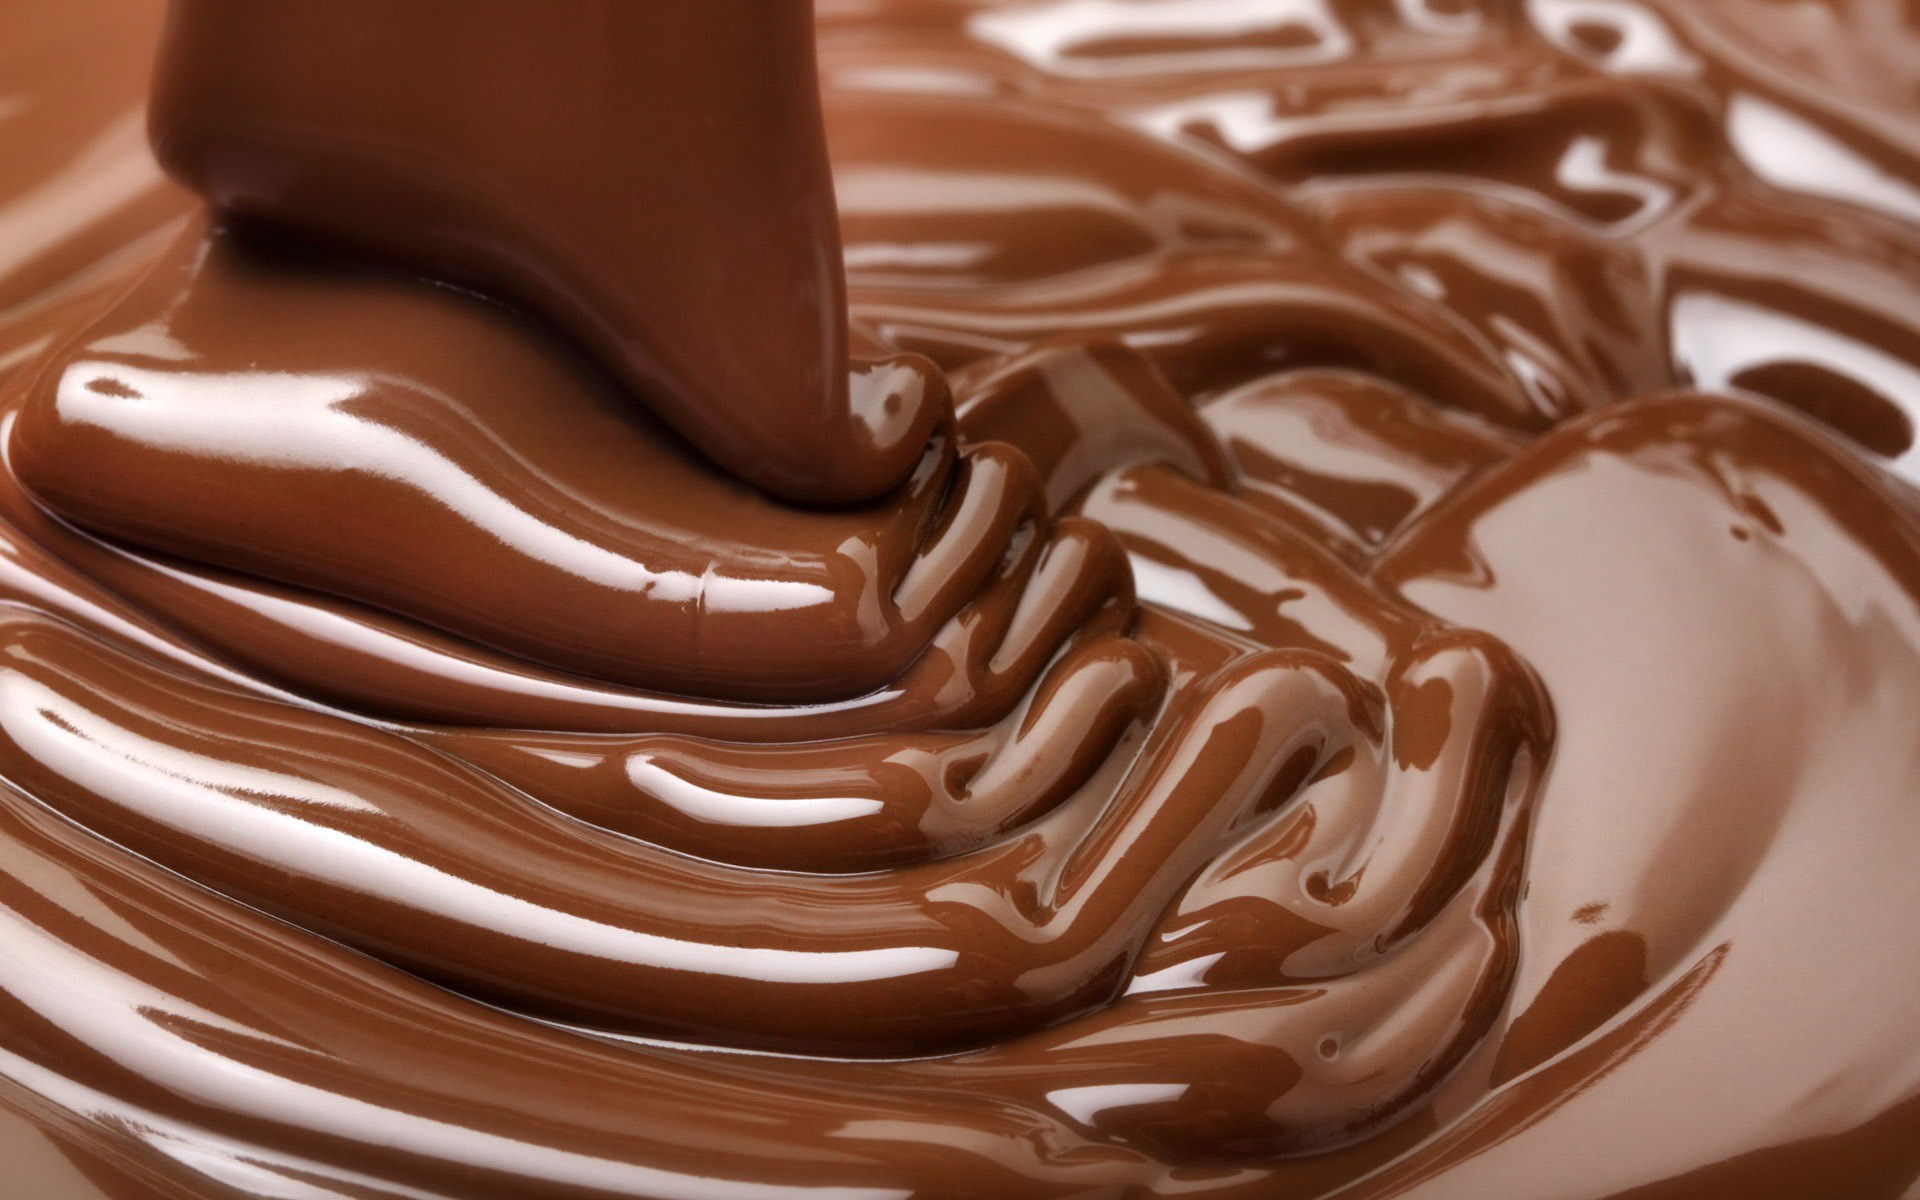 Chocolate y cacao para repostería creativa | Tartadictos